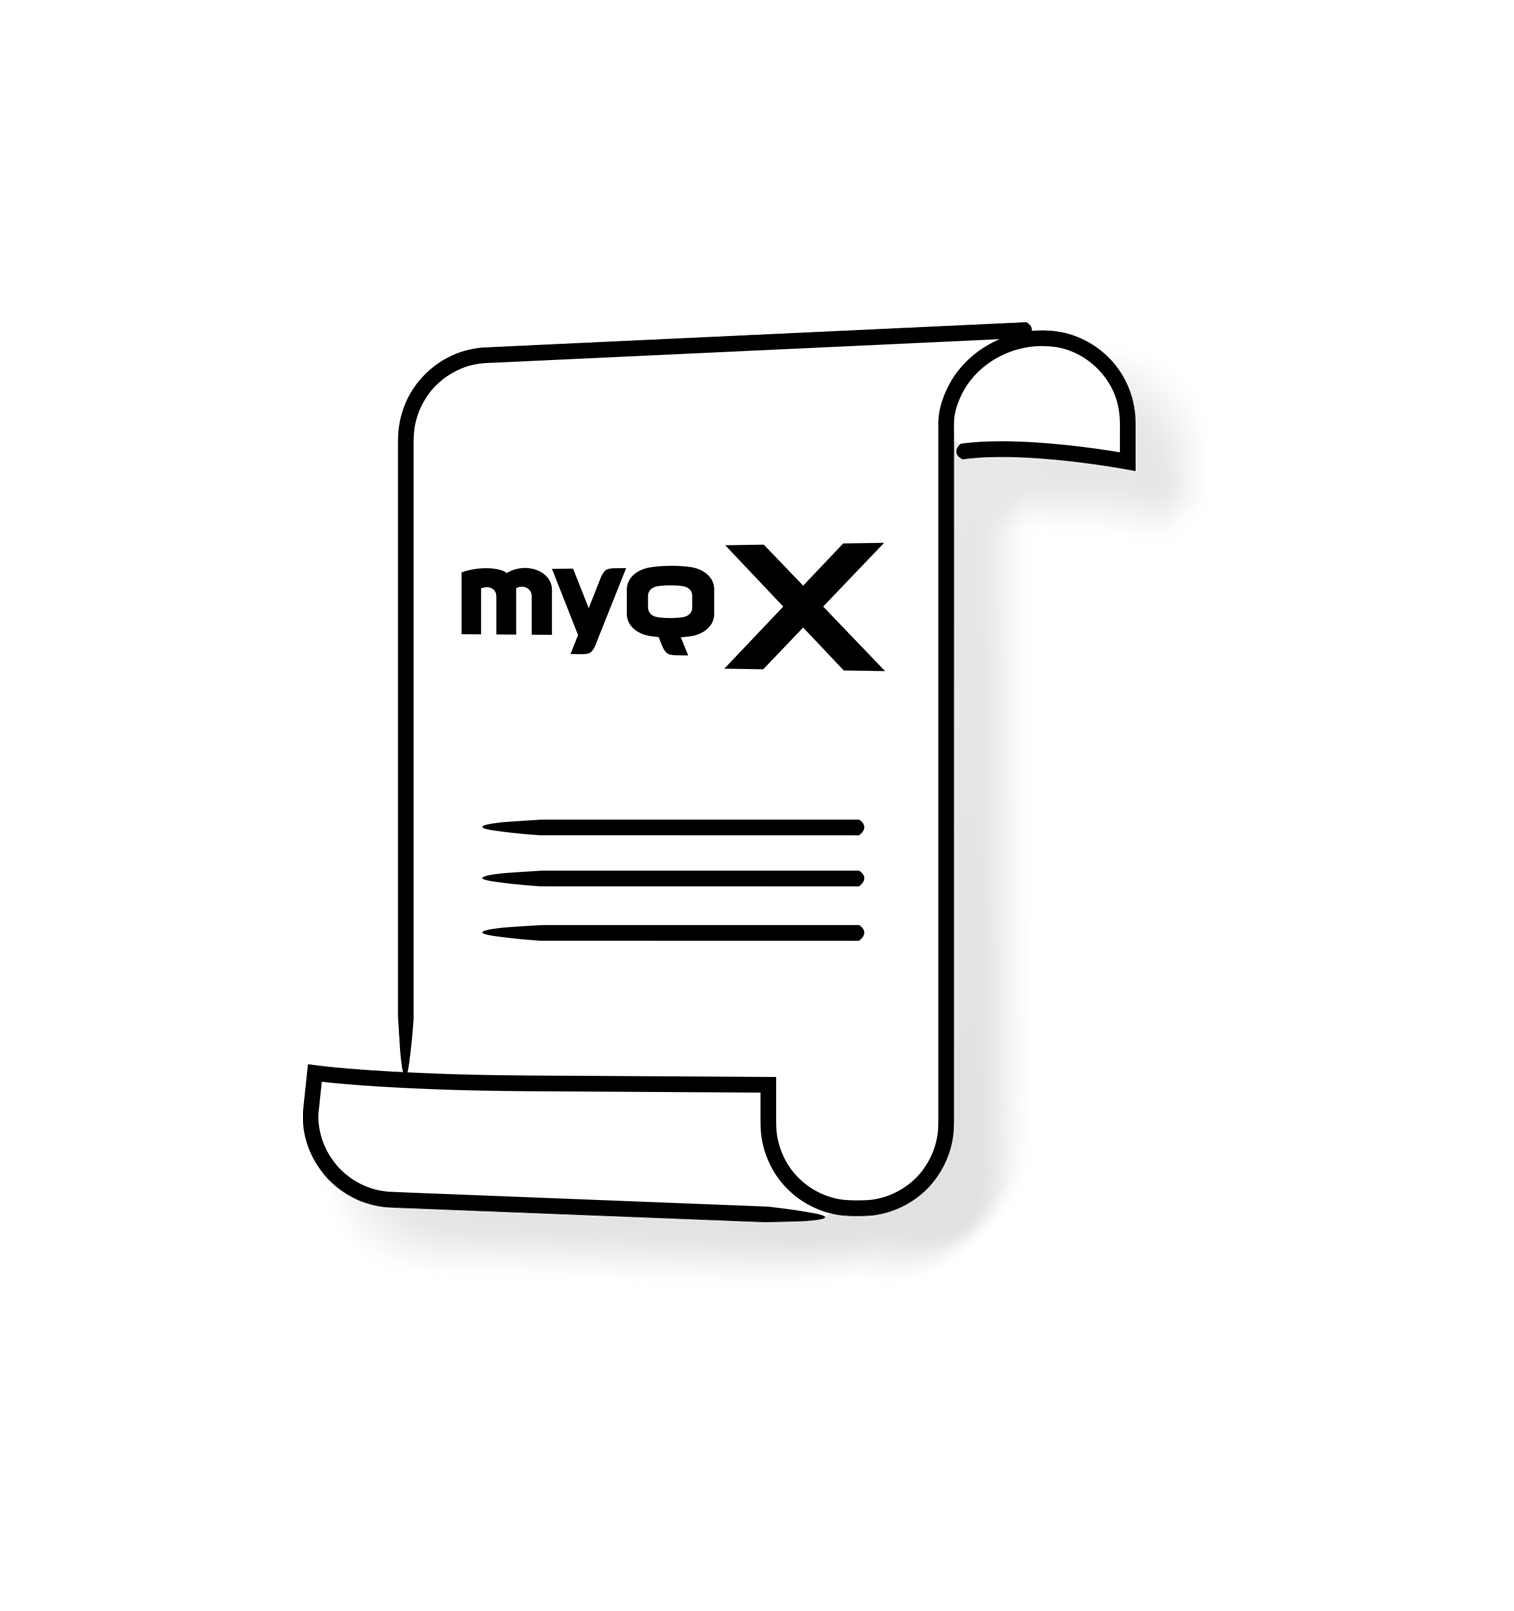 Documentos relacionados ao MyQ X